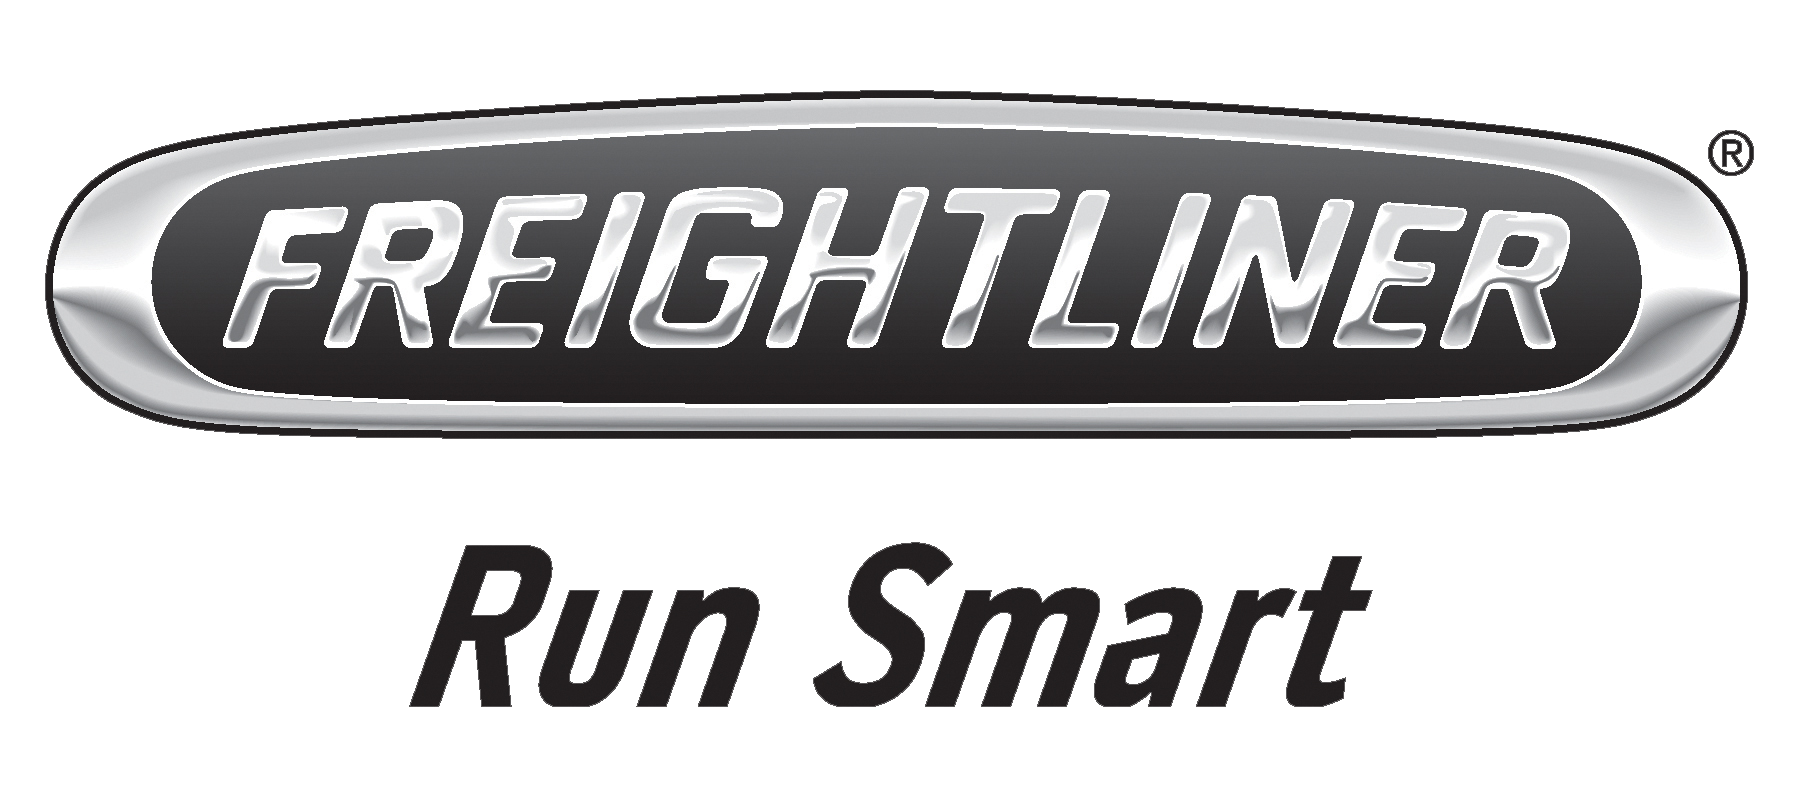 freightliner-logo---Copy.png